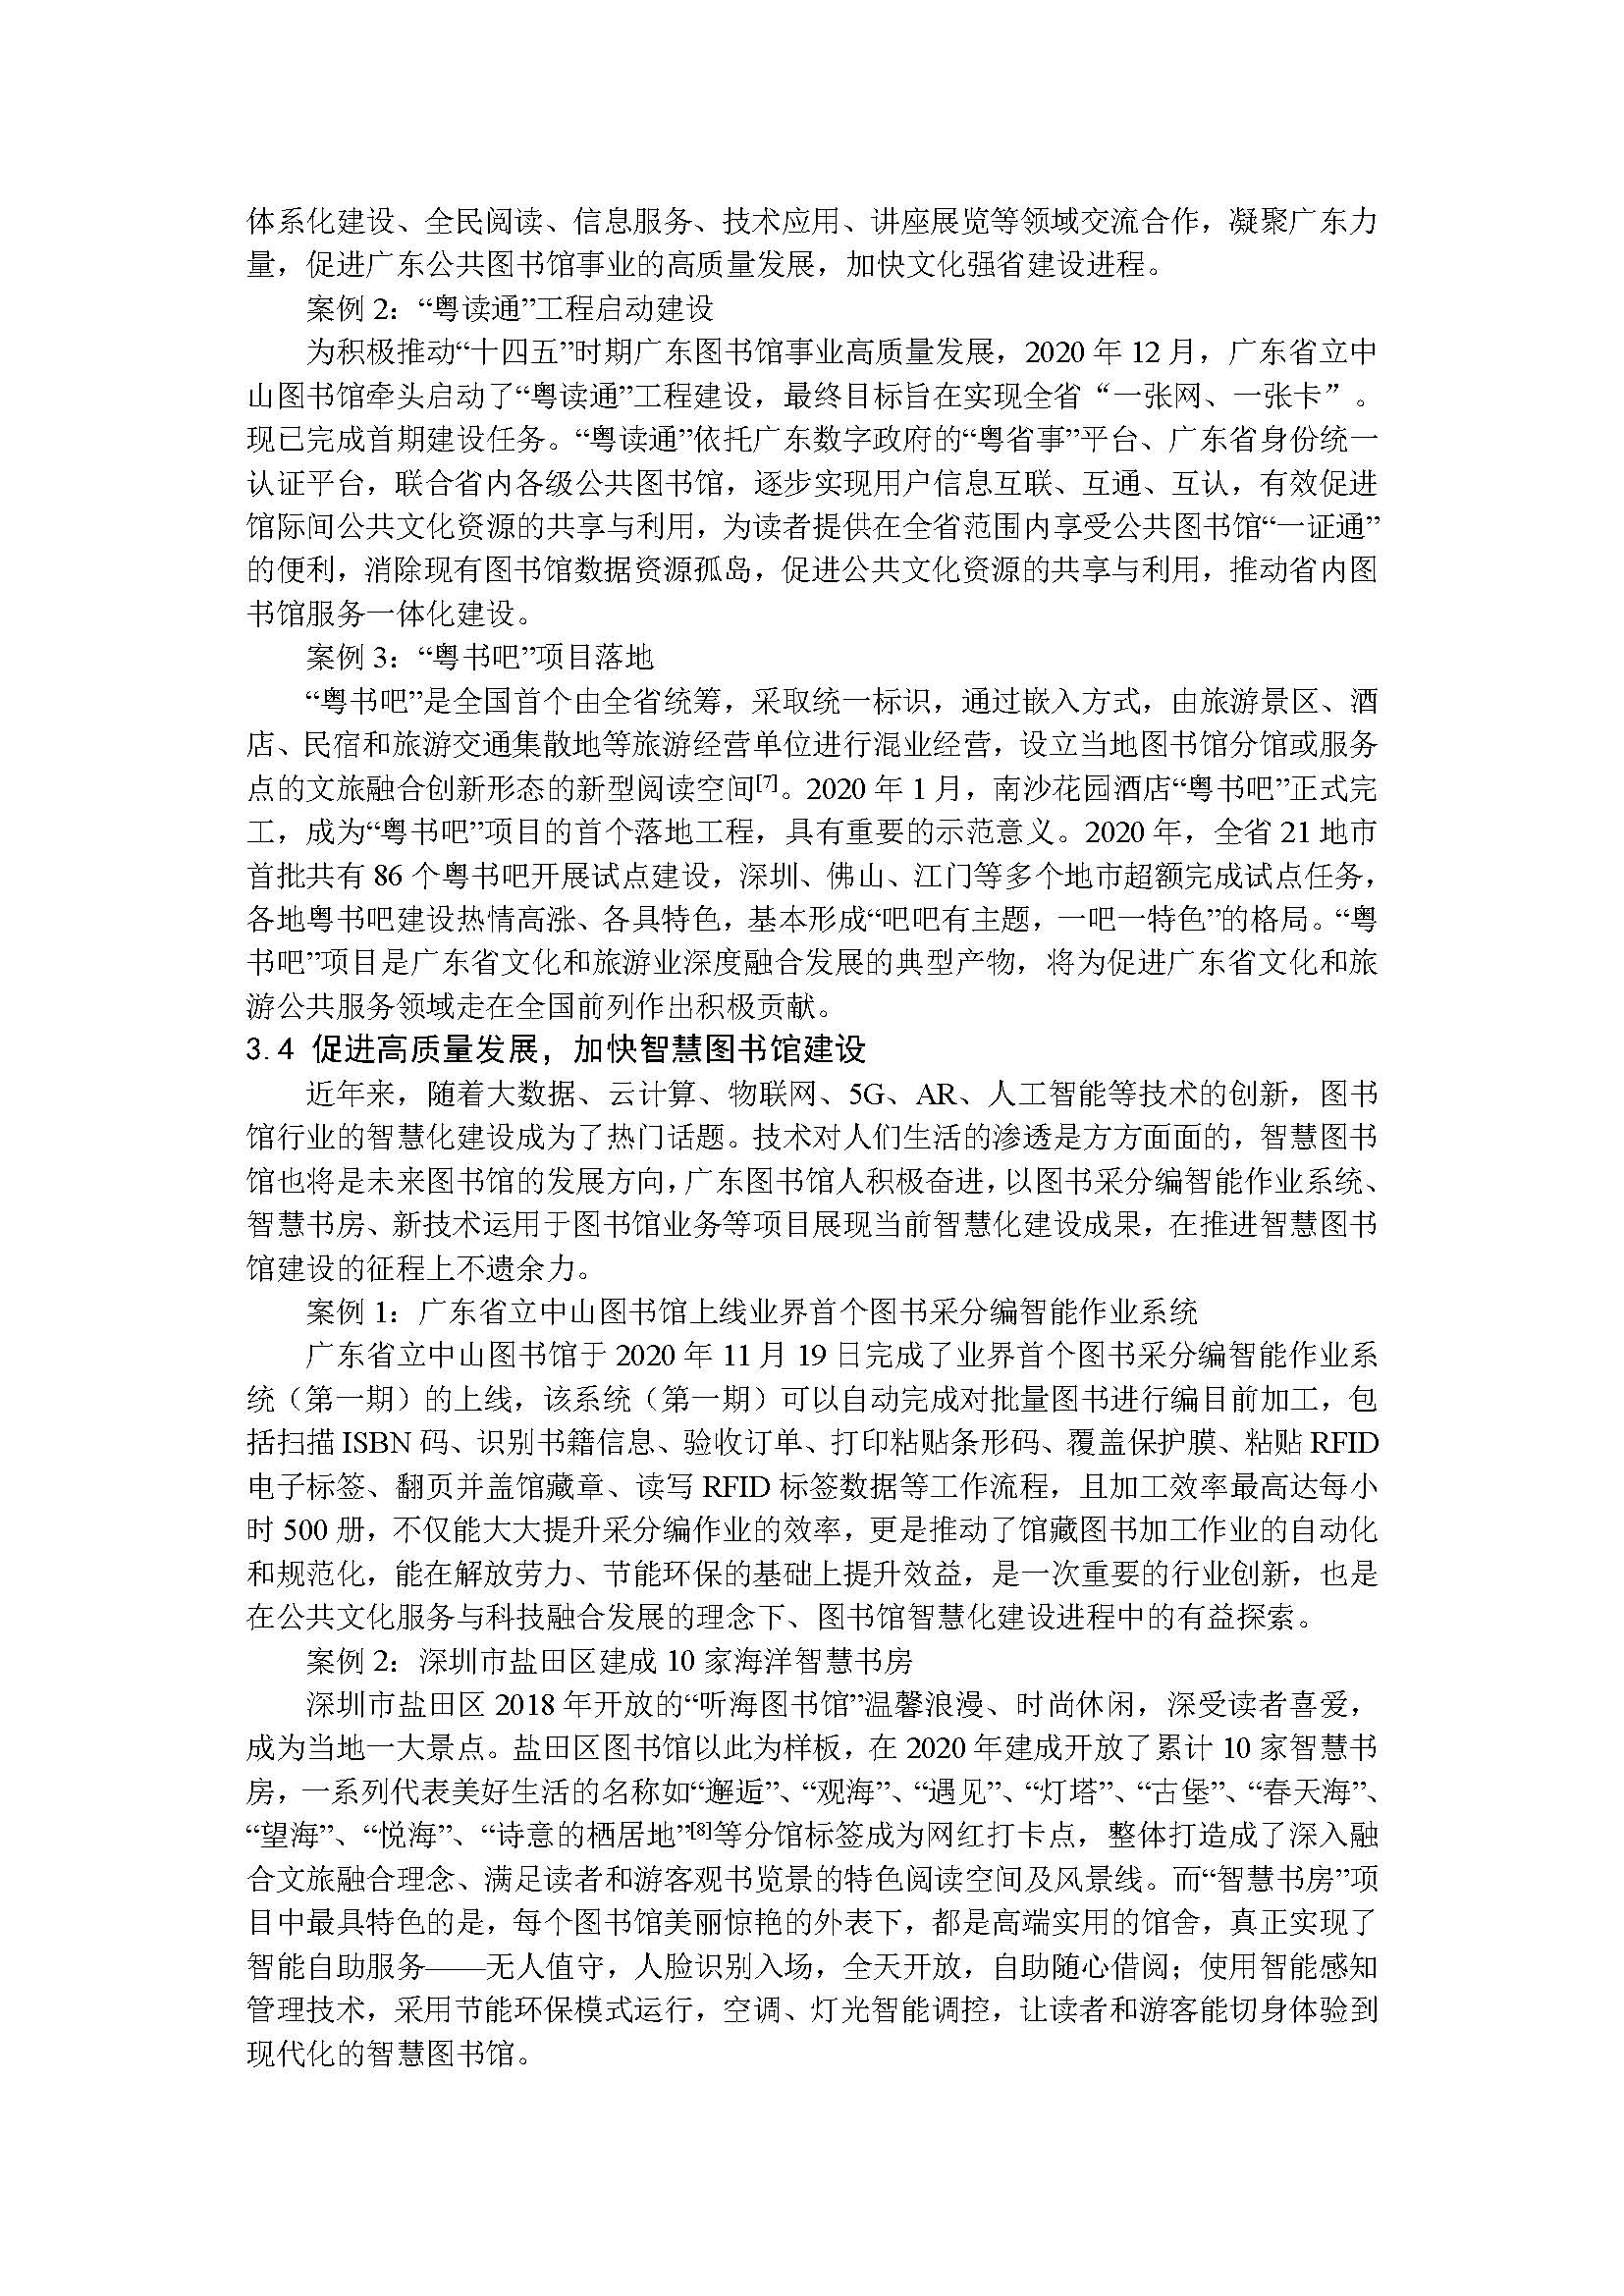 2020年广东省公共图书馆事业发展年度报告_页面_09.jpg